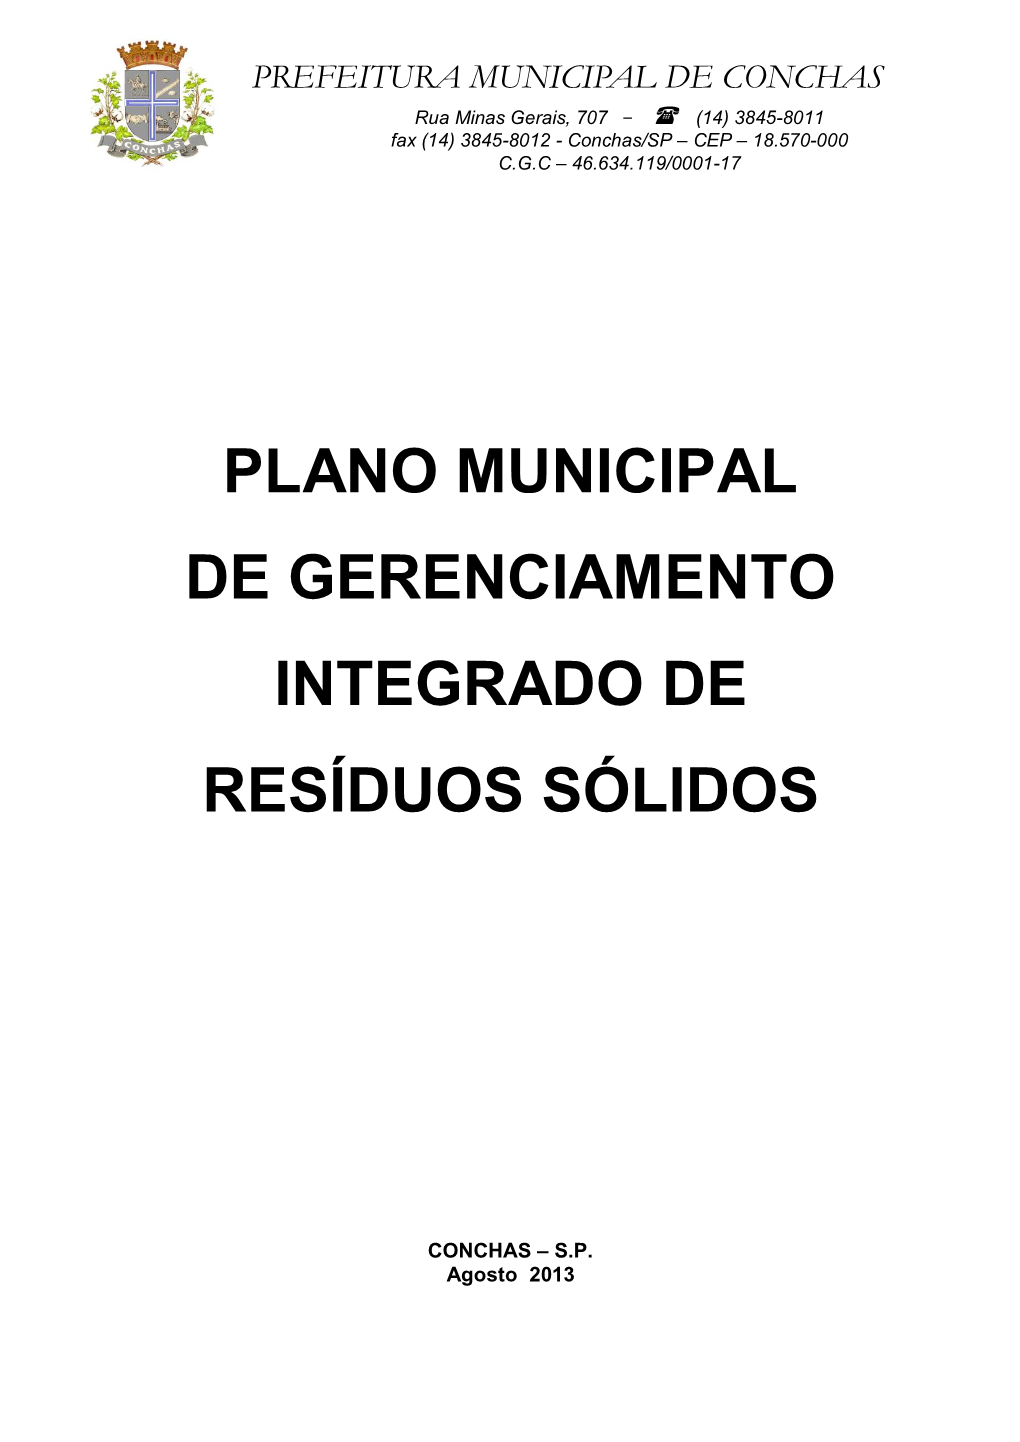 CONCHAS Rua Minas Gerais, 707 -  (14) 3845-8011 Fax (14) 3845-8012 - Conchas/SP – CEP – 18.570-000 C.G.C – 46.634.119/0001-17